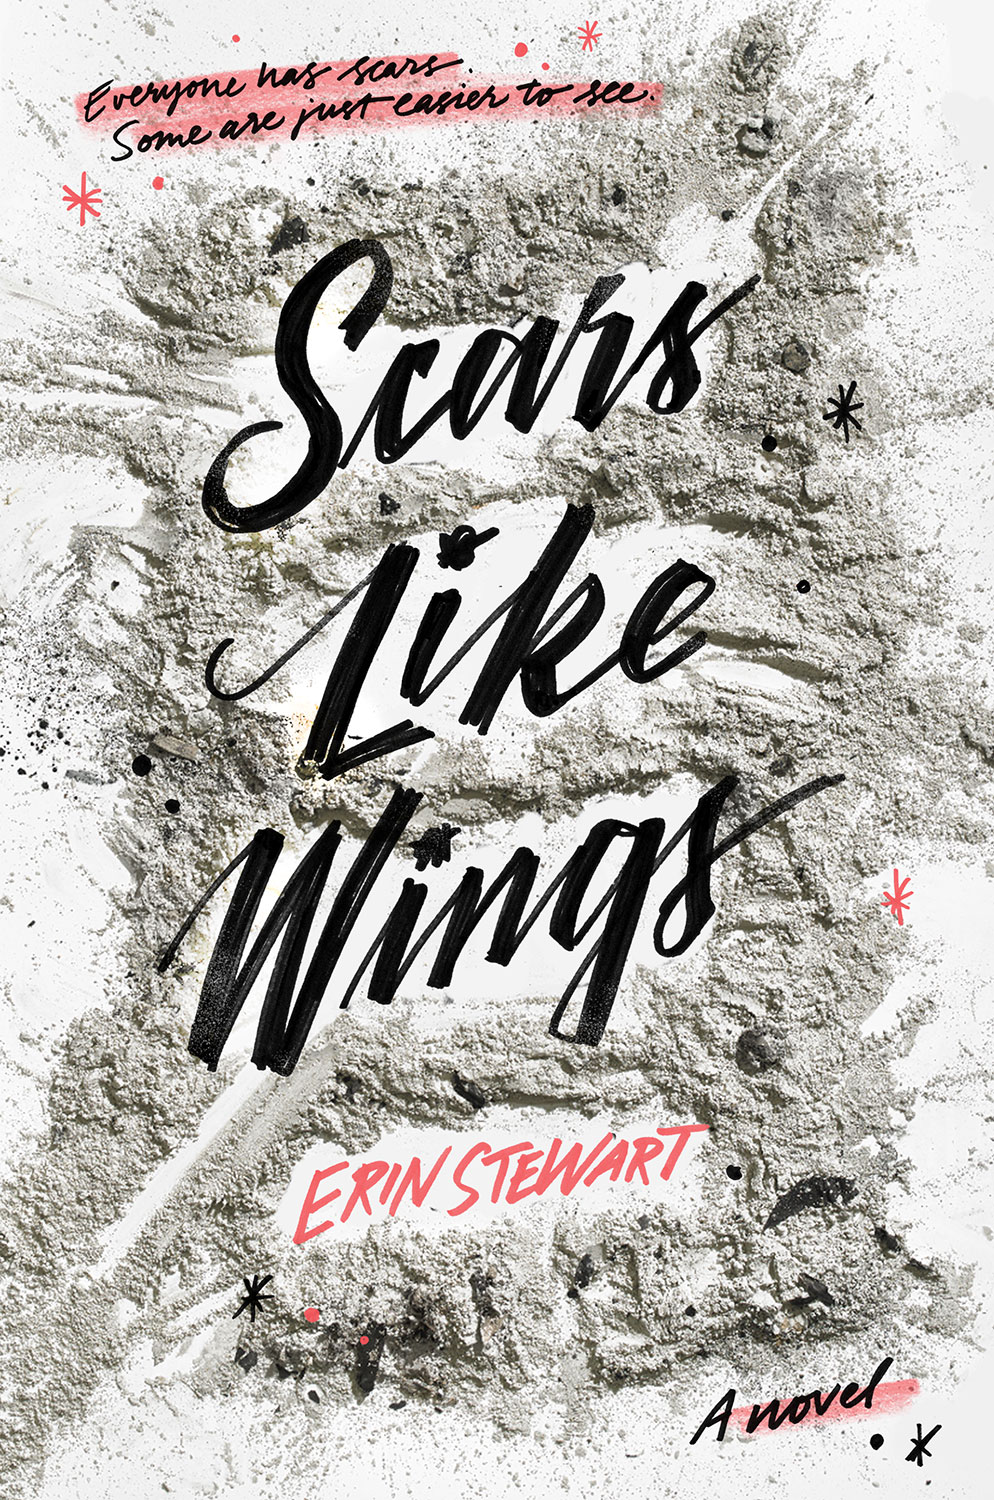 Scars-like-wings-final-lettering